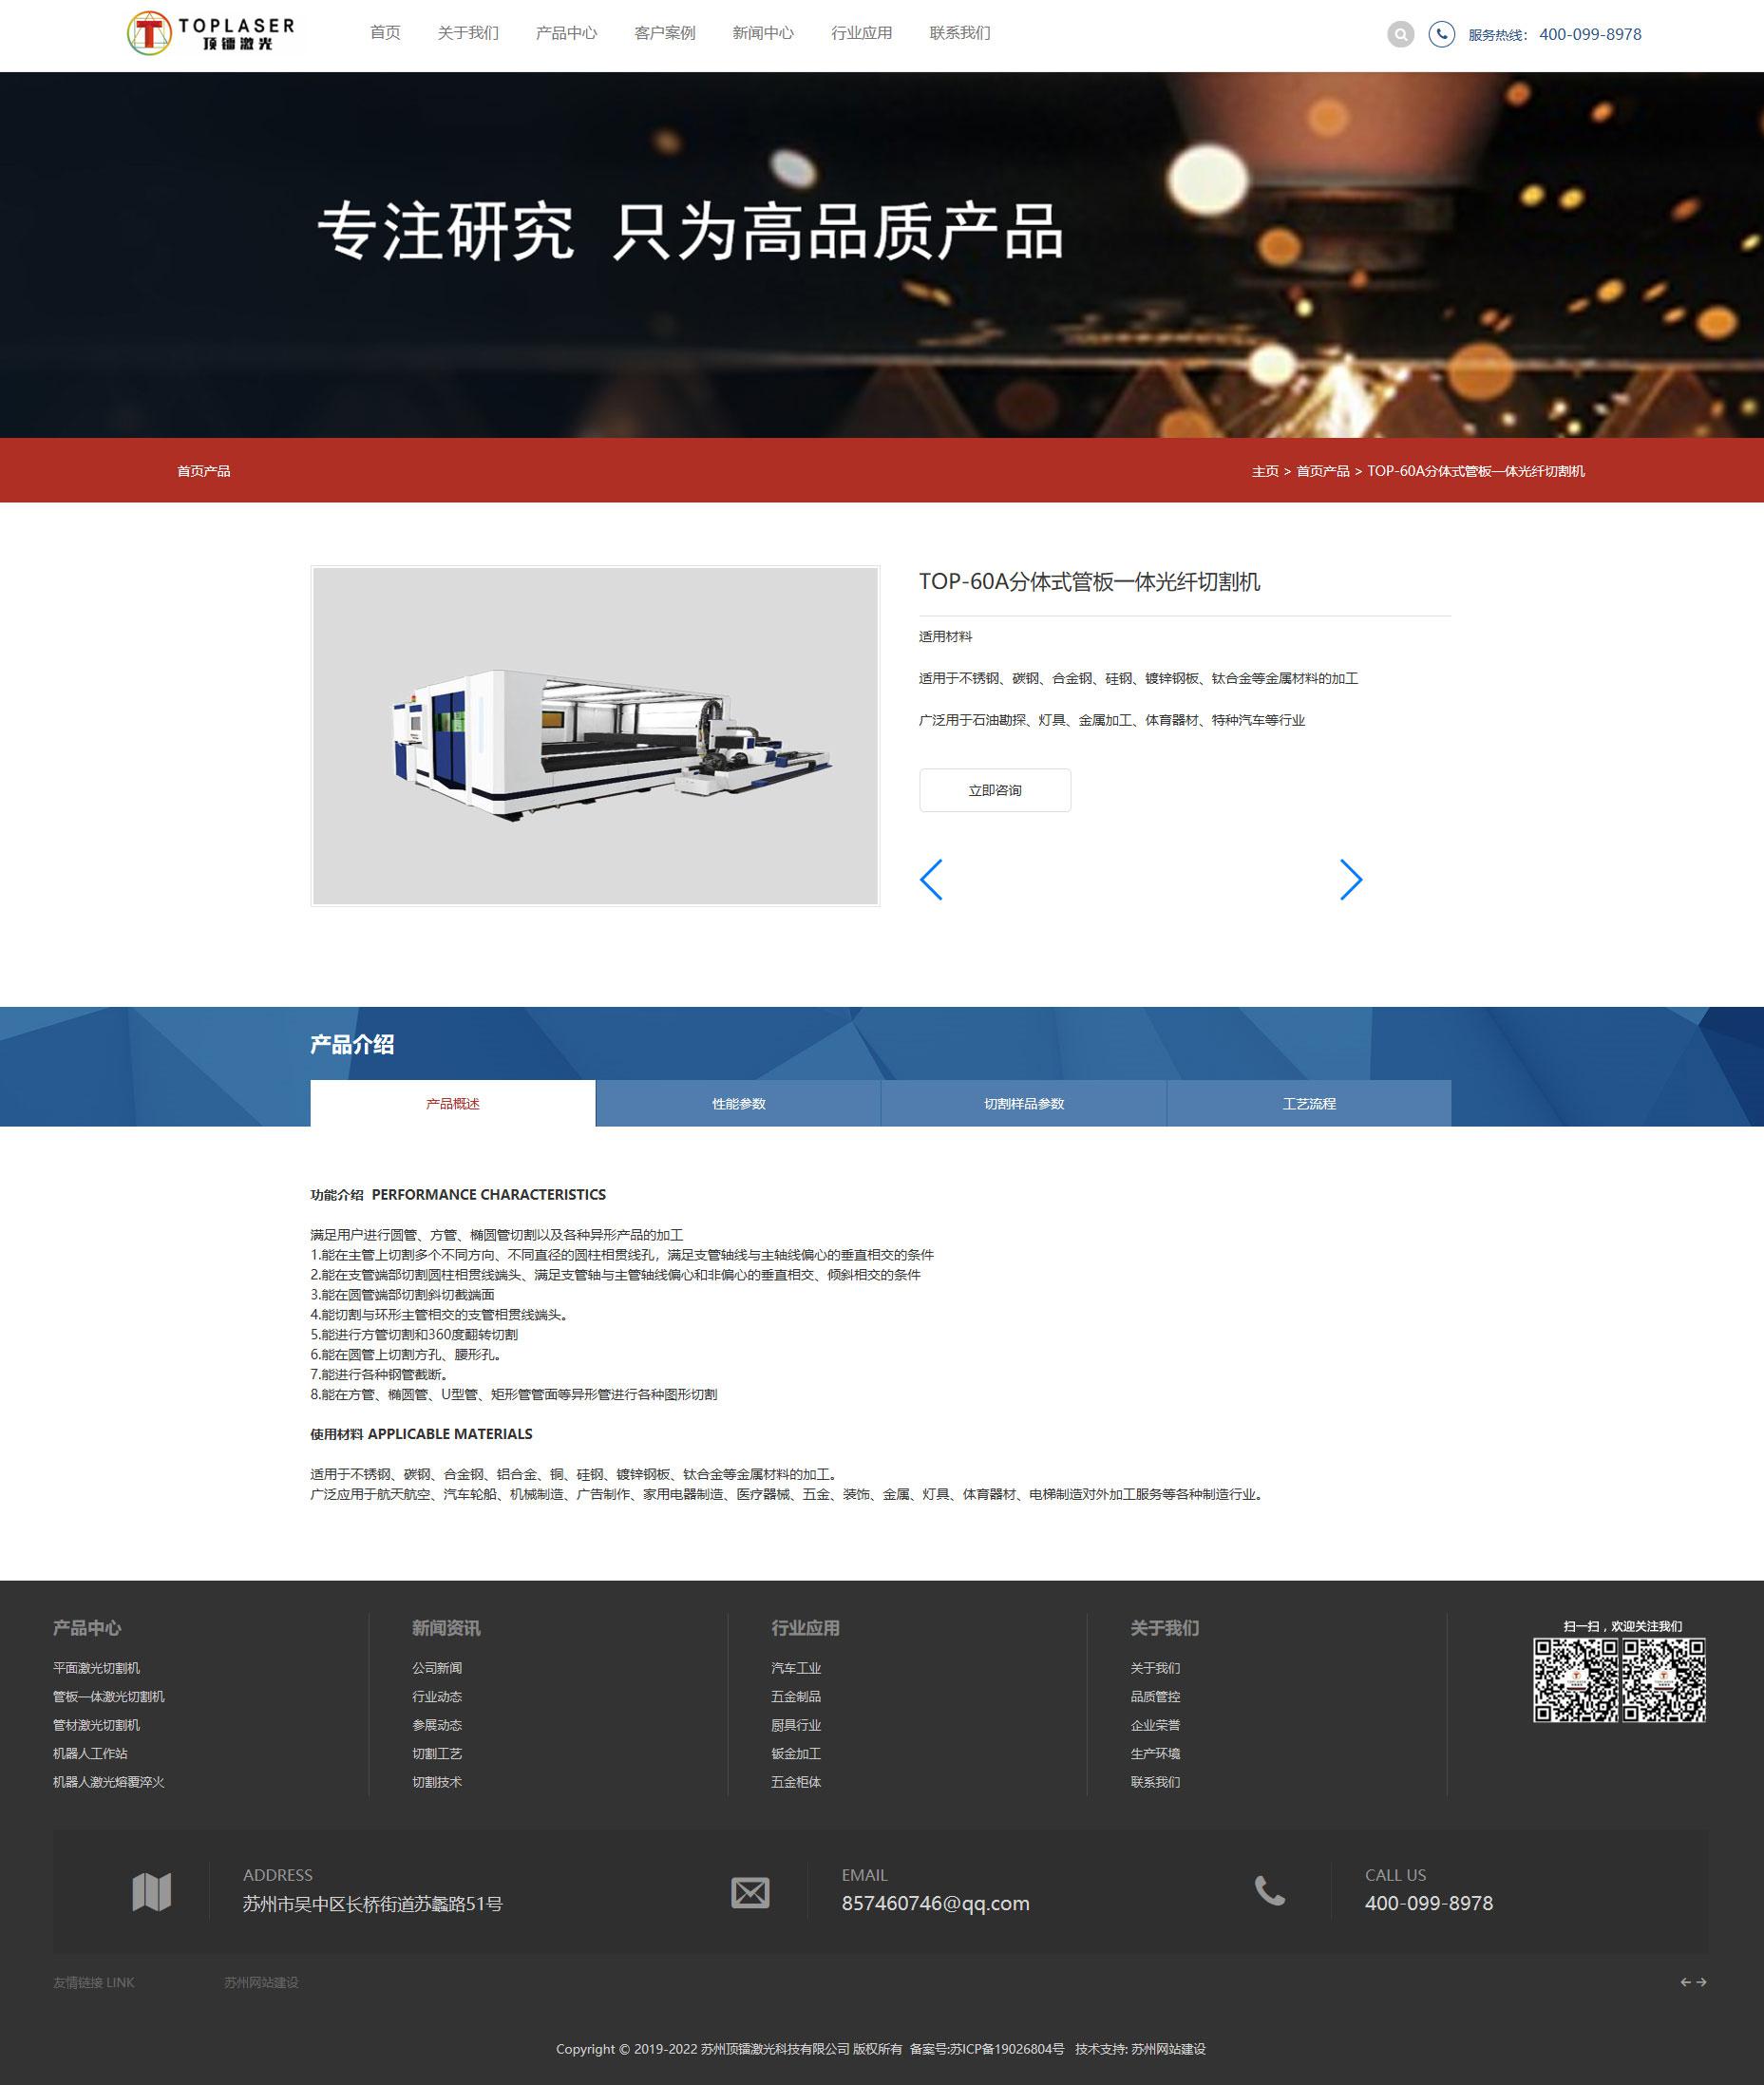 苏州网络公司为顶镭激光科技有限公司制作的产品详情页面